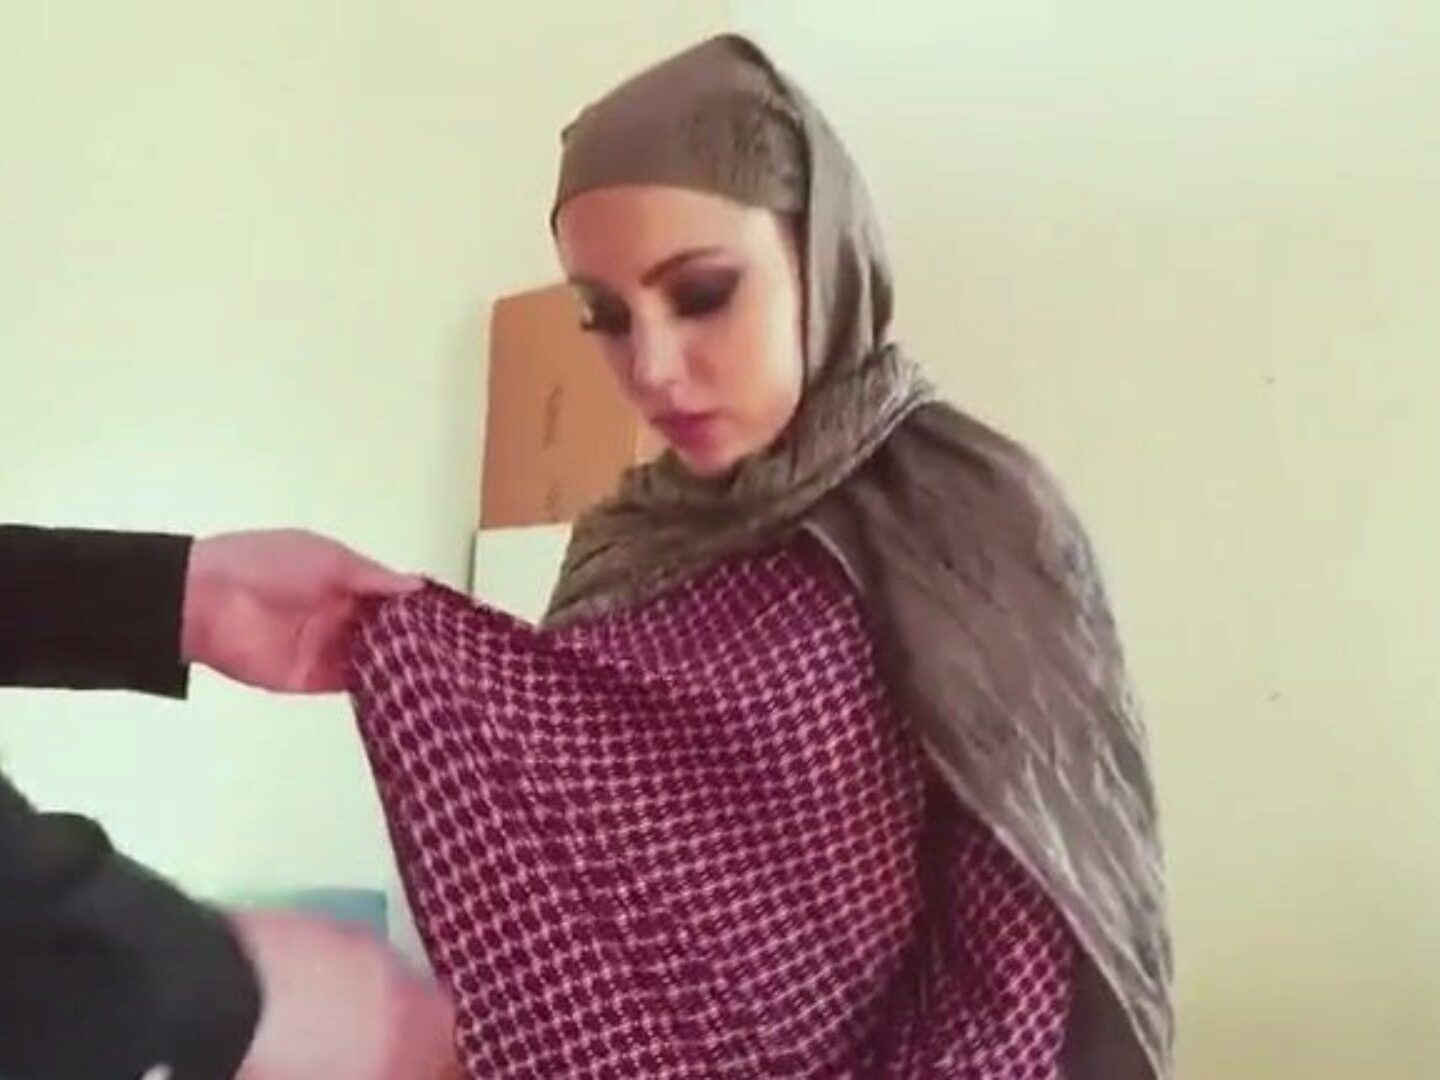 1440px x 1080px - Xxx Arab Kuwaiti Girl Having Sex Free Downloadthai - XXX BULE